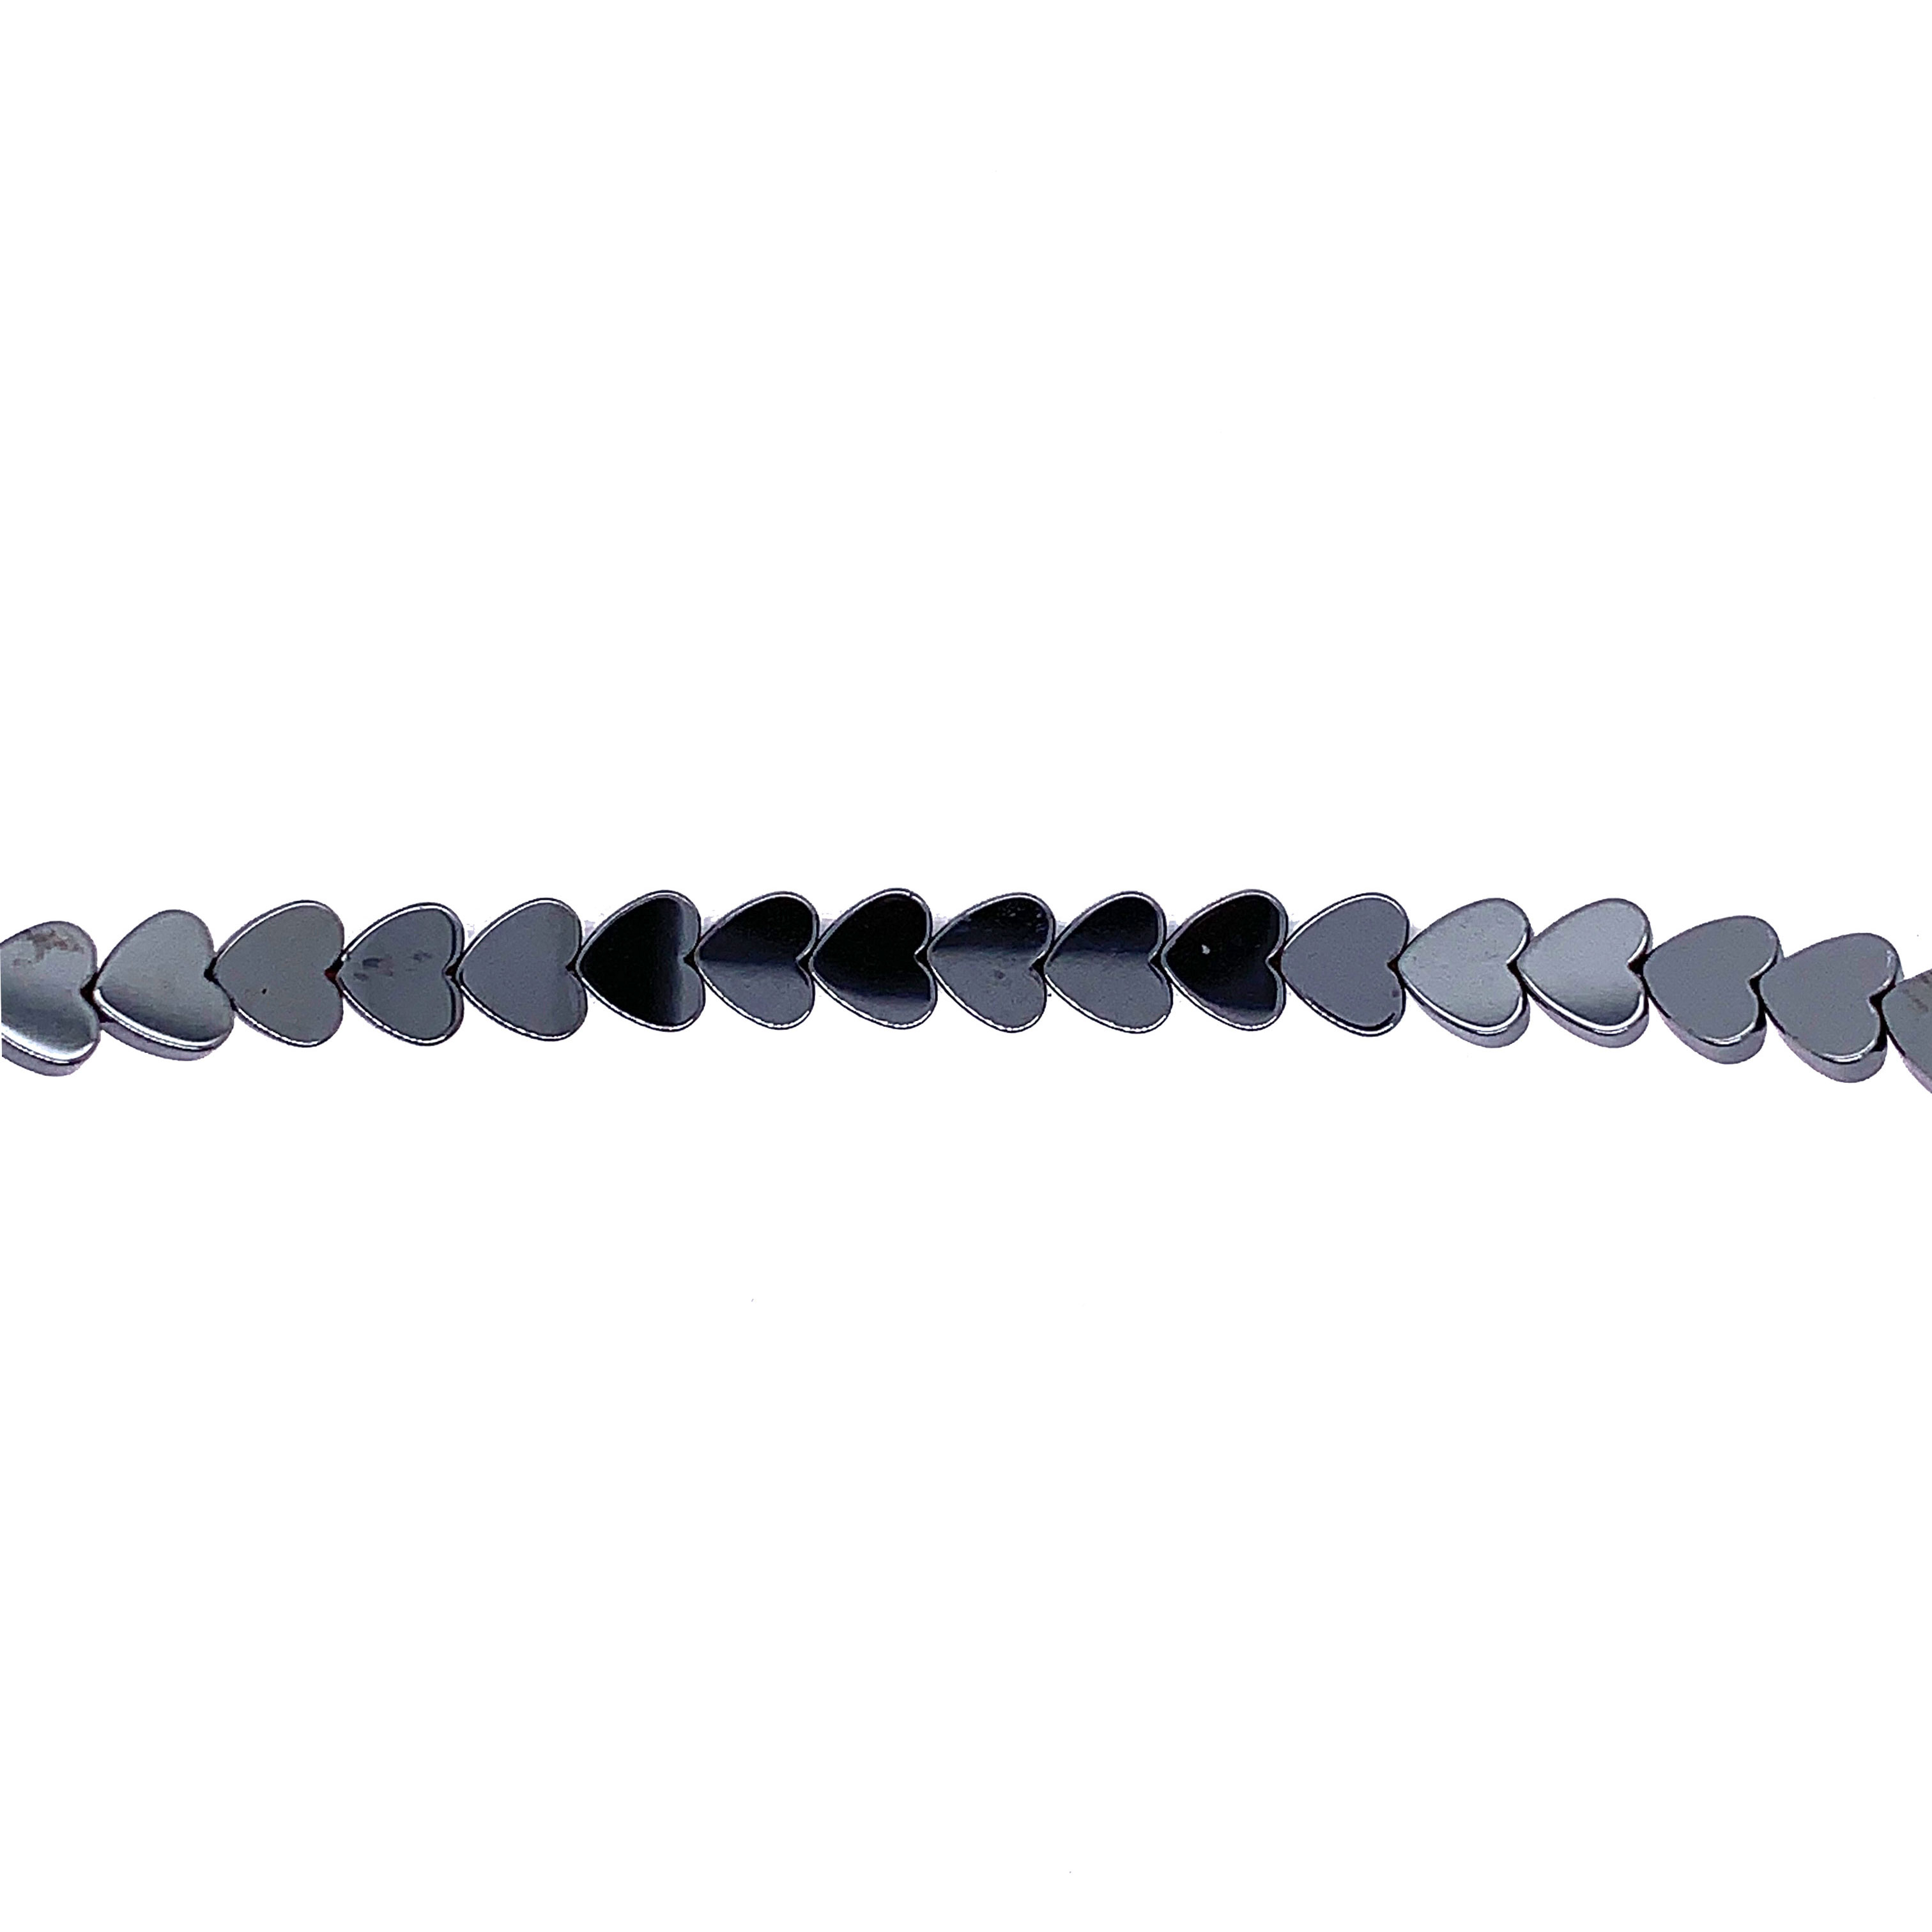 6mm Heart Hematite Beads